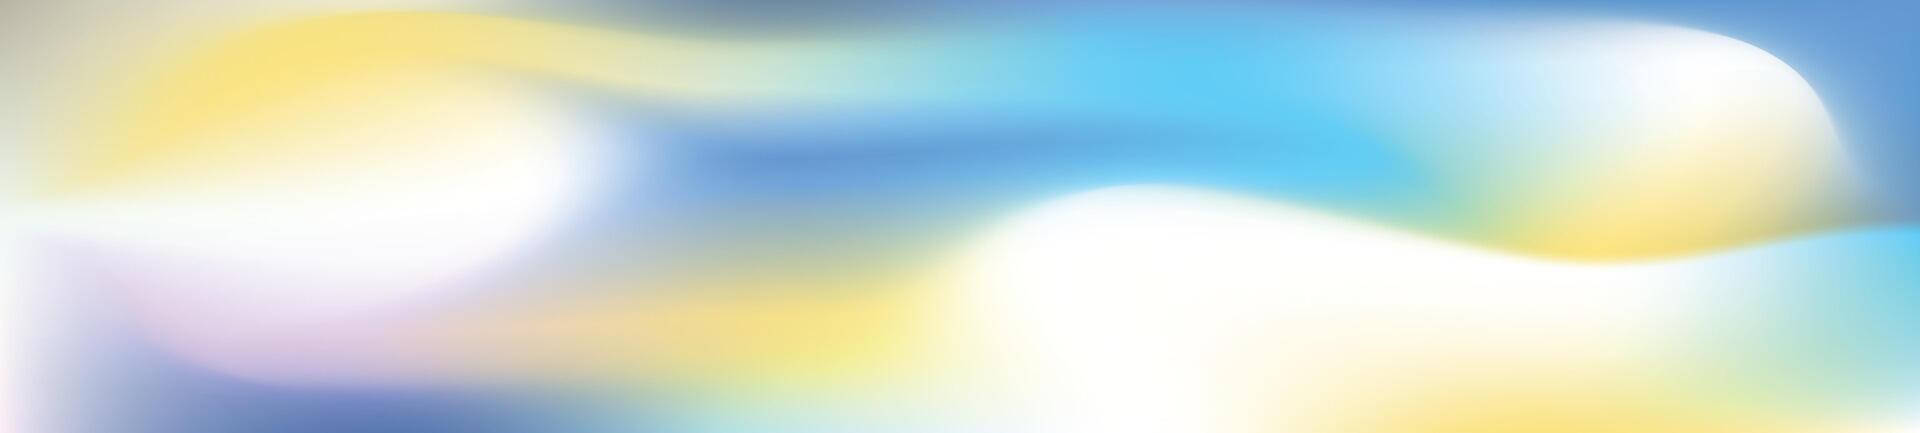 lutning bakgrund blandning blå, gul, och lila med mjuk glöd, vibrerande aura. platt vektor illustration isolerat på vit bakgrund.